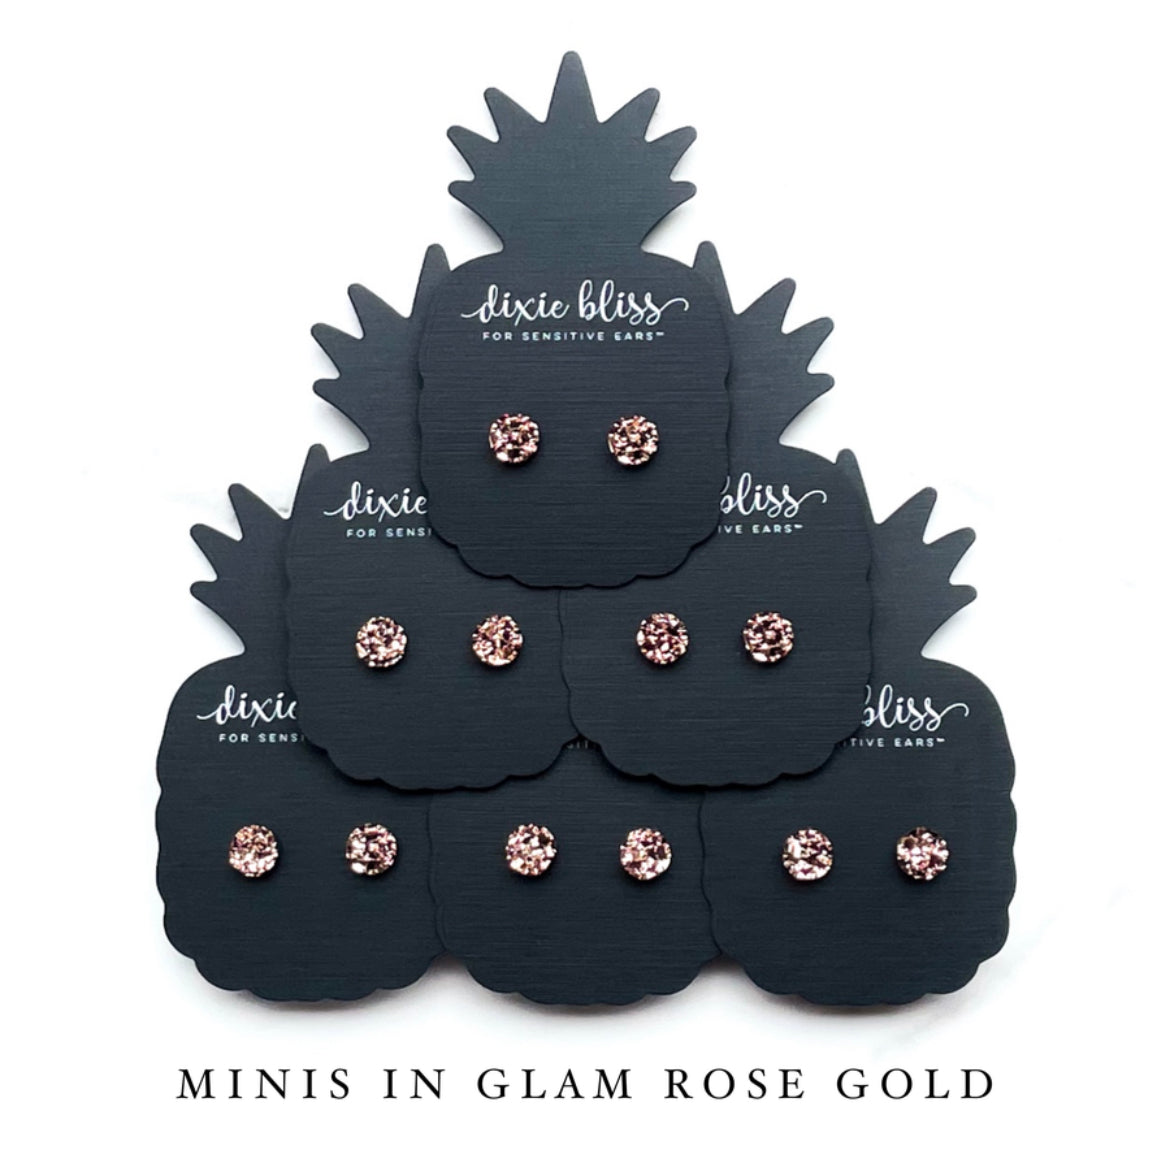 Minis in Glam Rose Gold - Dixie Bliss - Single Stud Earrings